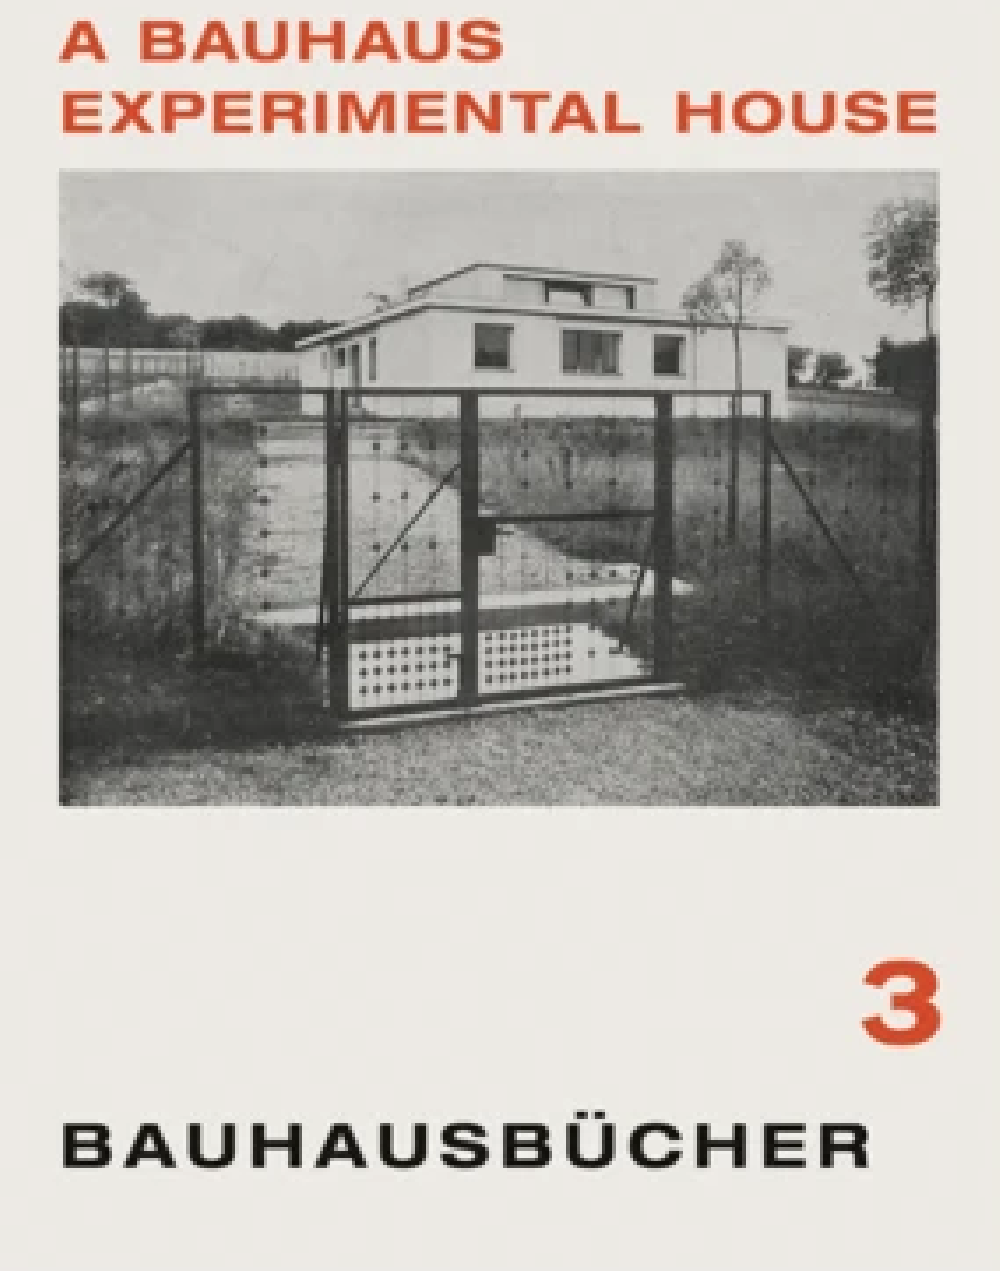 Bauhausbucher 3 - A bauhaus experimental house